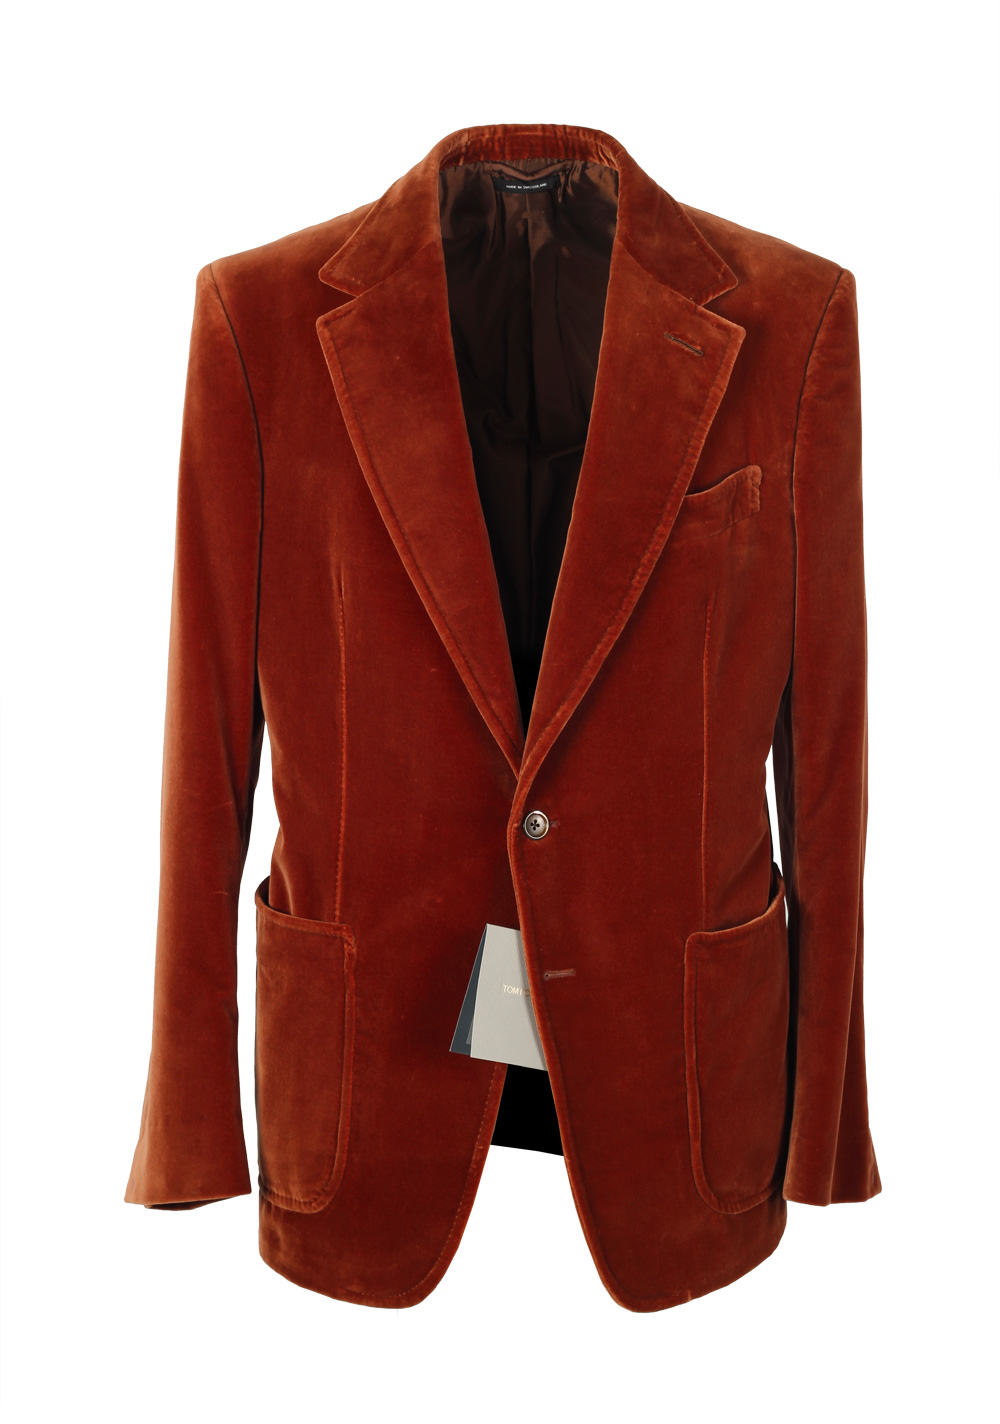 TOM FORD Shelton Velvet Brown Sport Coat Size 52 / 42R U.S. Cotton ...